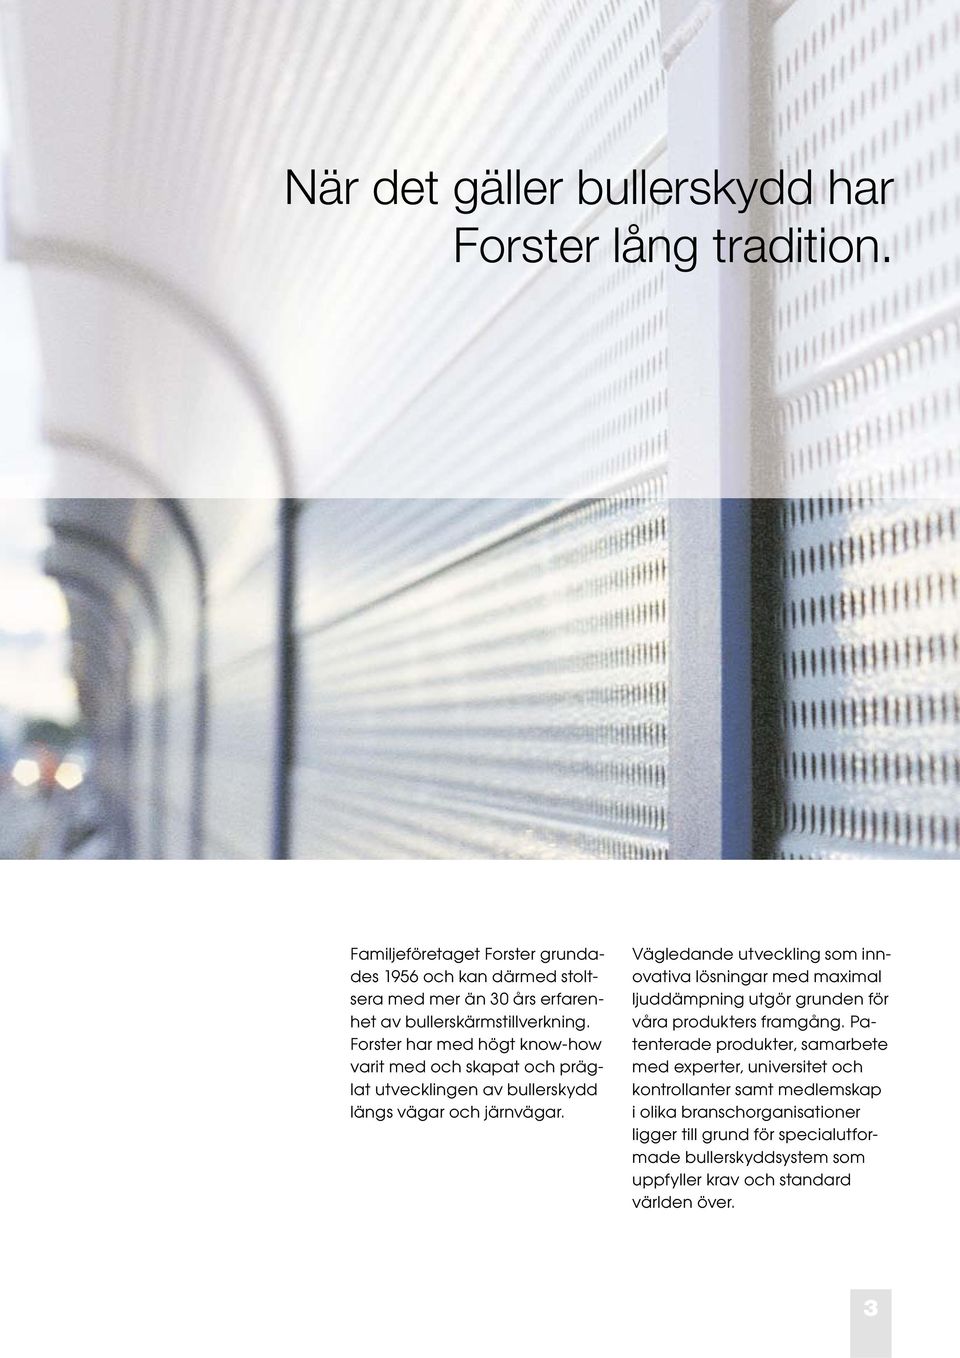 Forster har med högt know-how varit med och skapat och präglat utvecklingen av bullerskydd längs vägar och järnvägar.